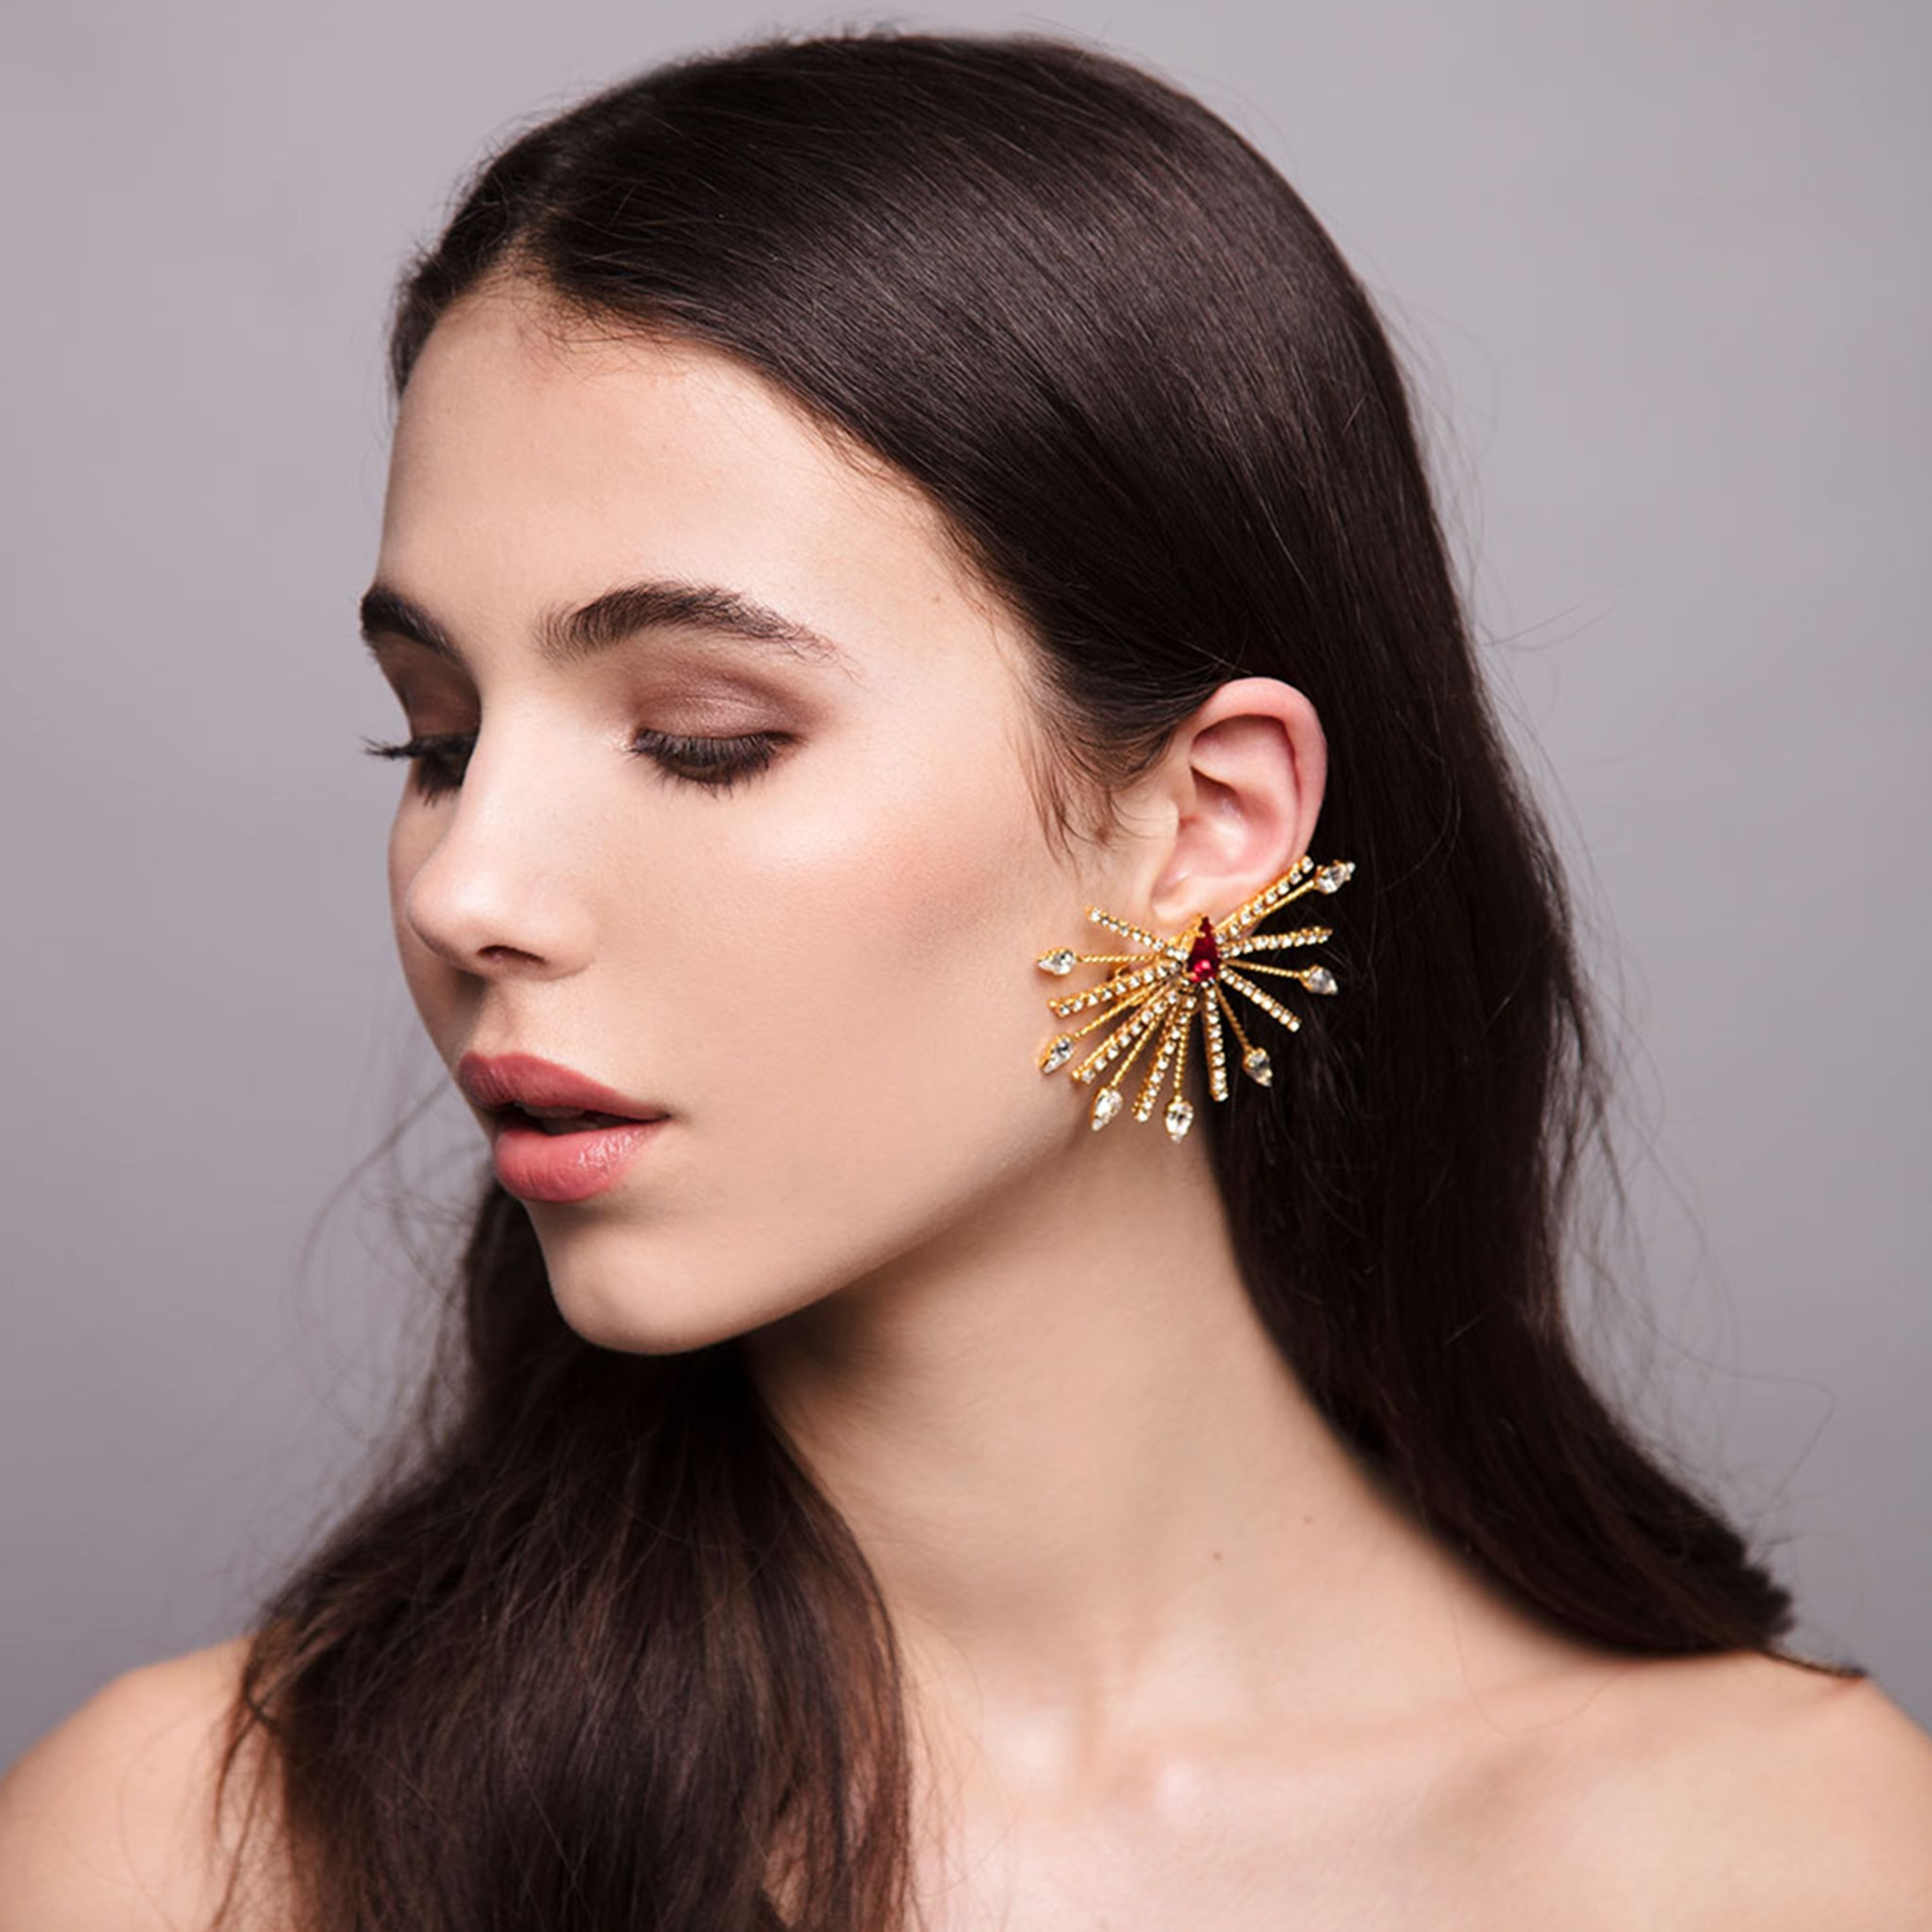 Aurea Rays | 9 | Gold or Silver Earrings